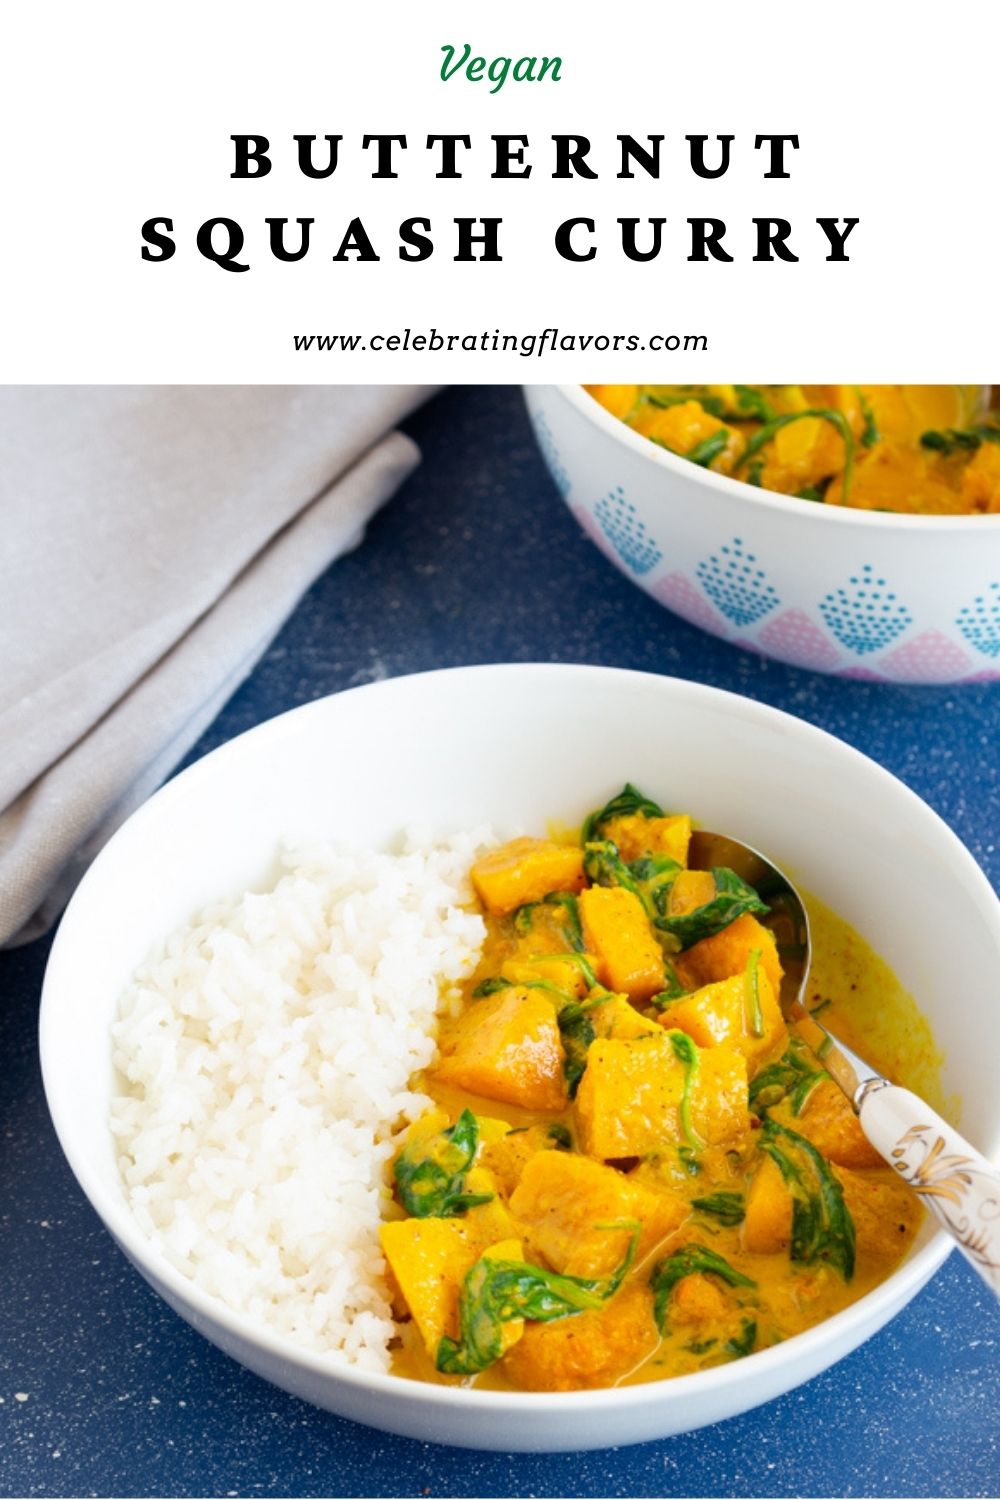 Vegan Butternut Squash Curry